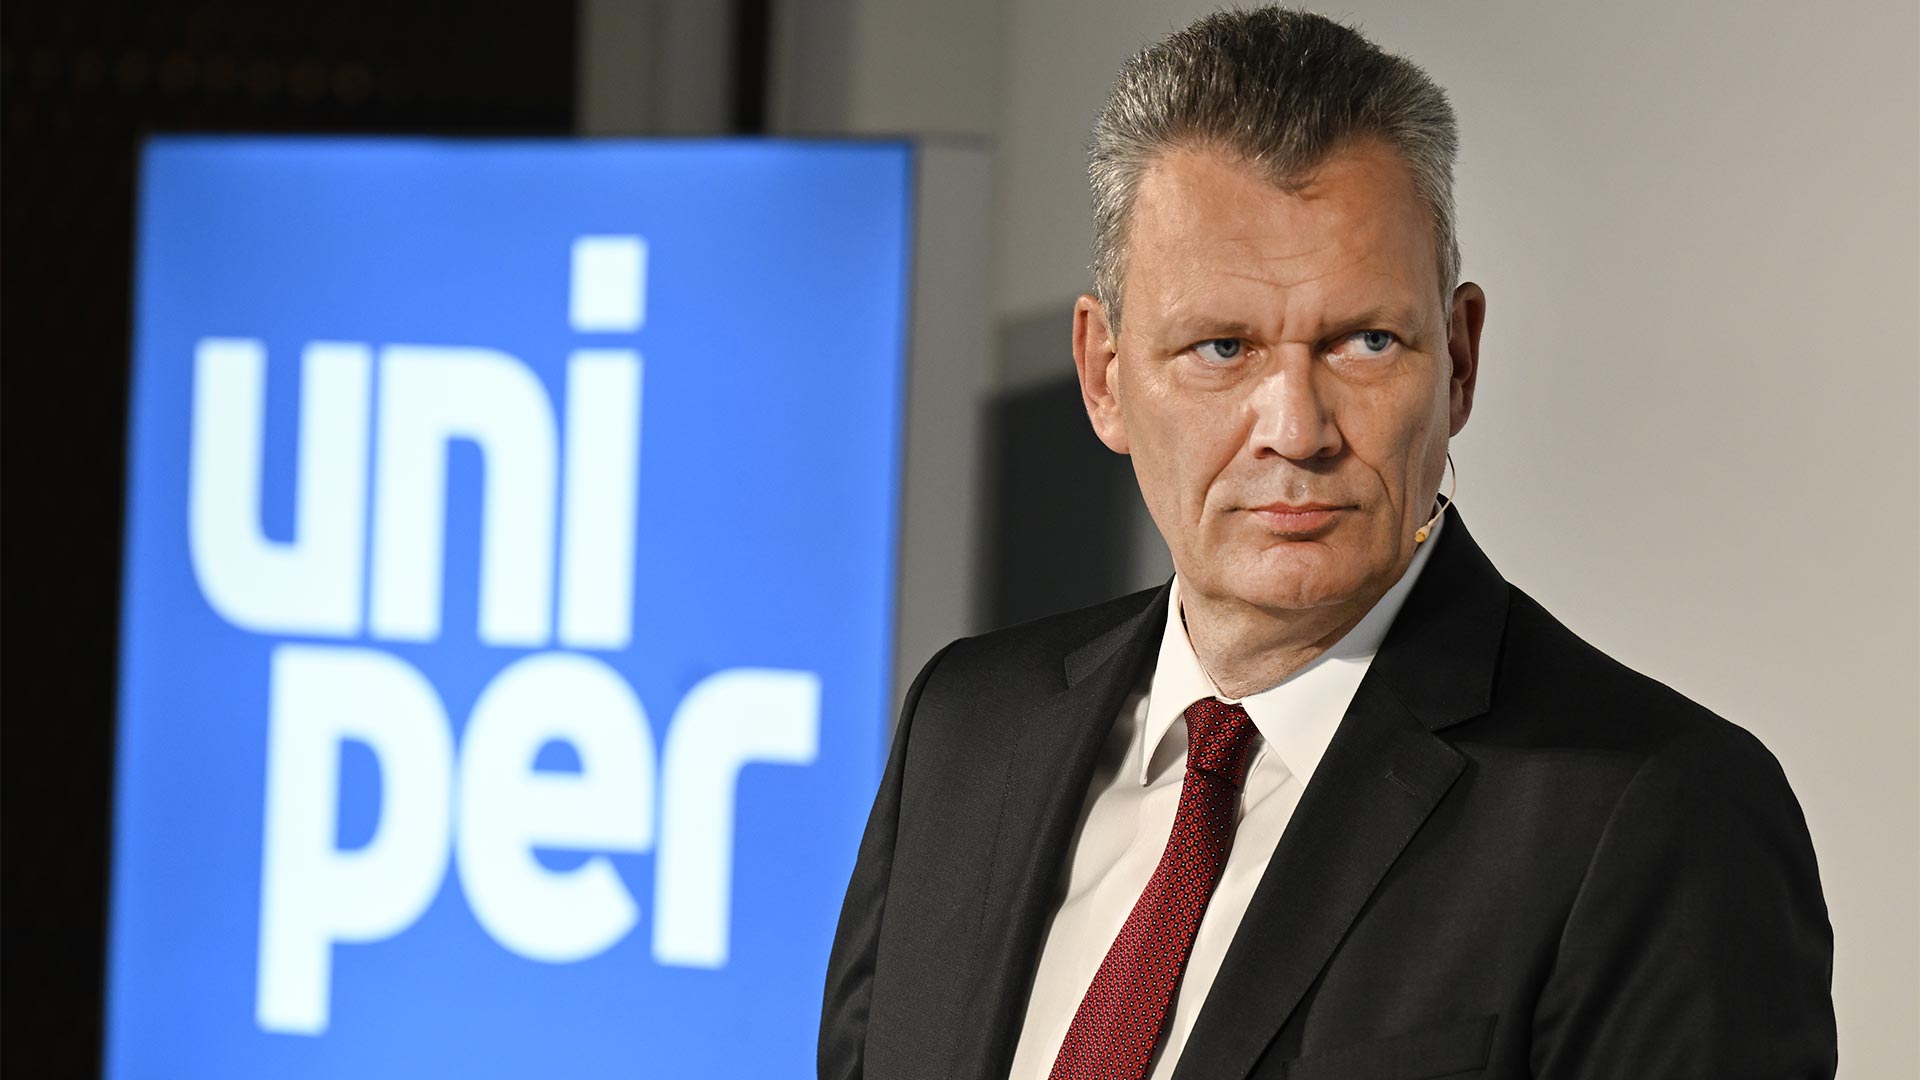 Chef des Gashandelskonzerns Uniper erklärt Rücktritt